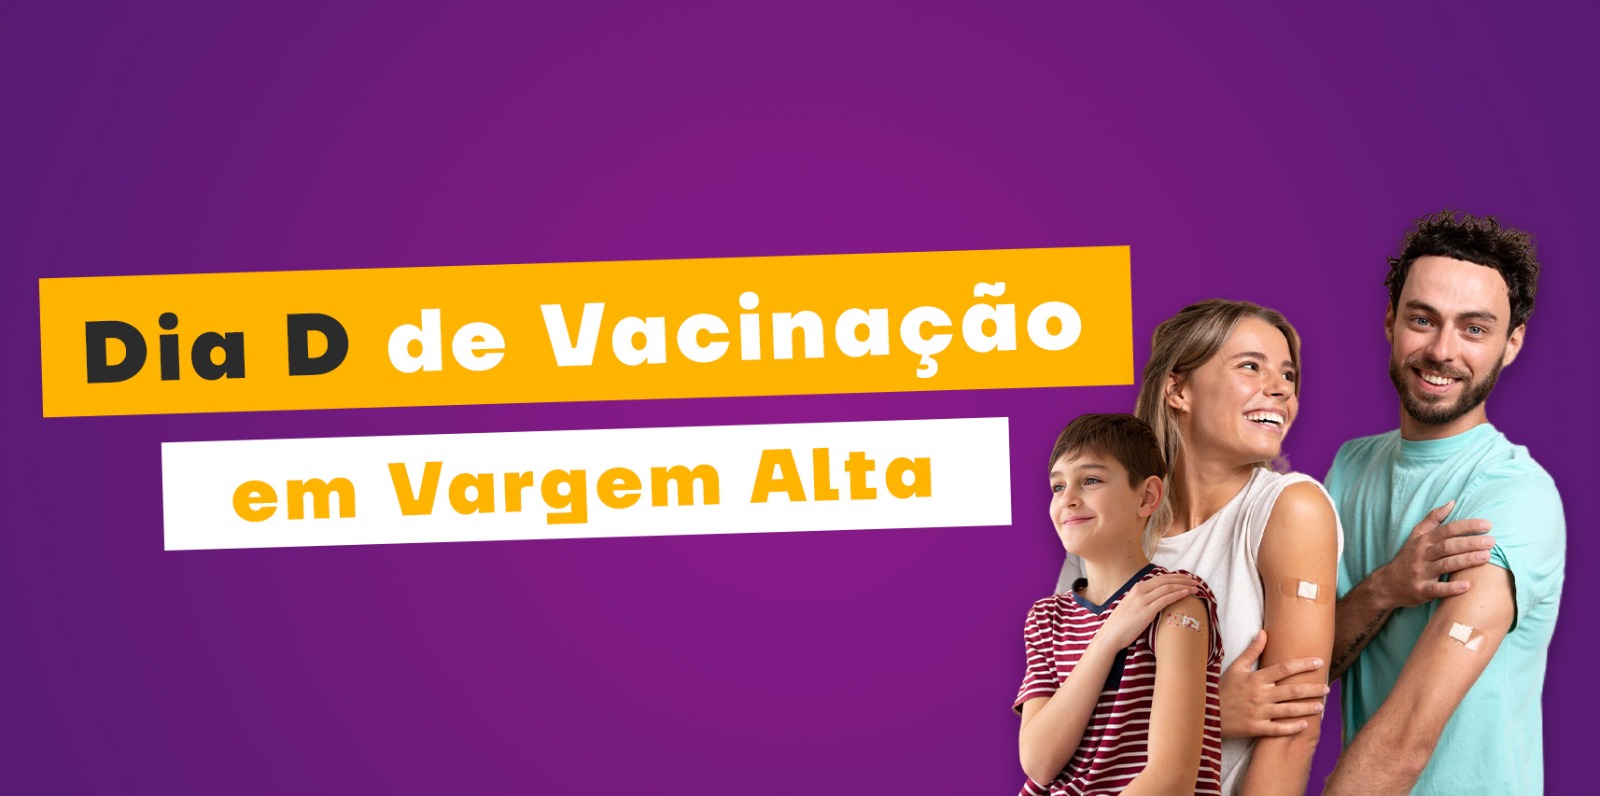 Dia D de Vacinação em Vargem Alta acontece neste sábado (15)